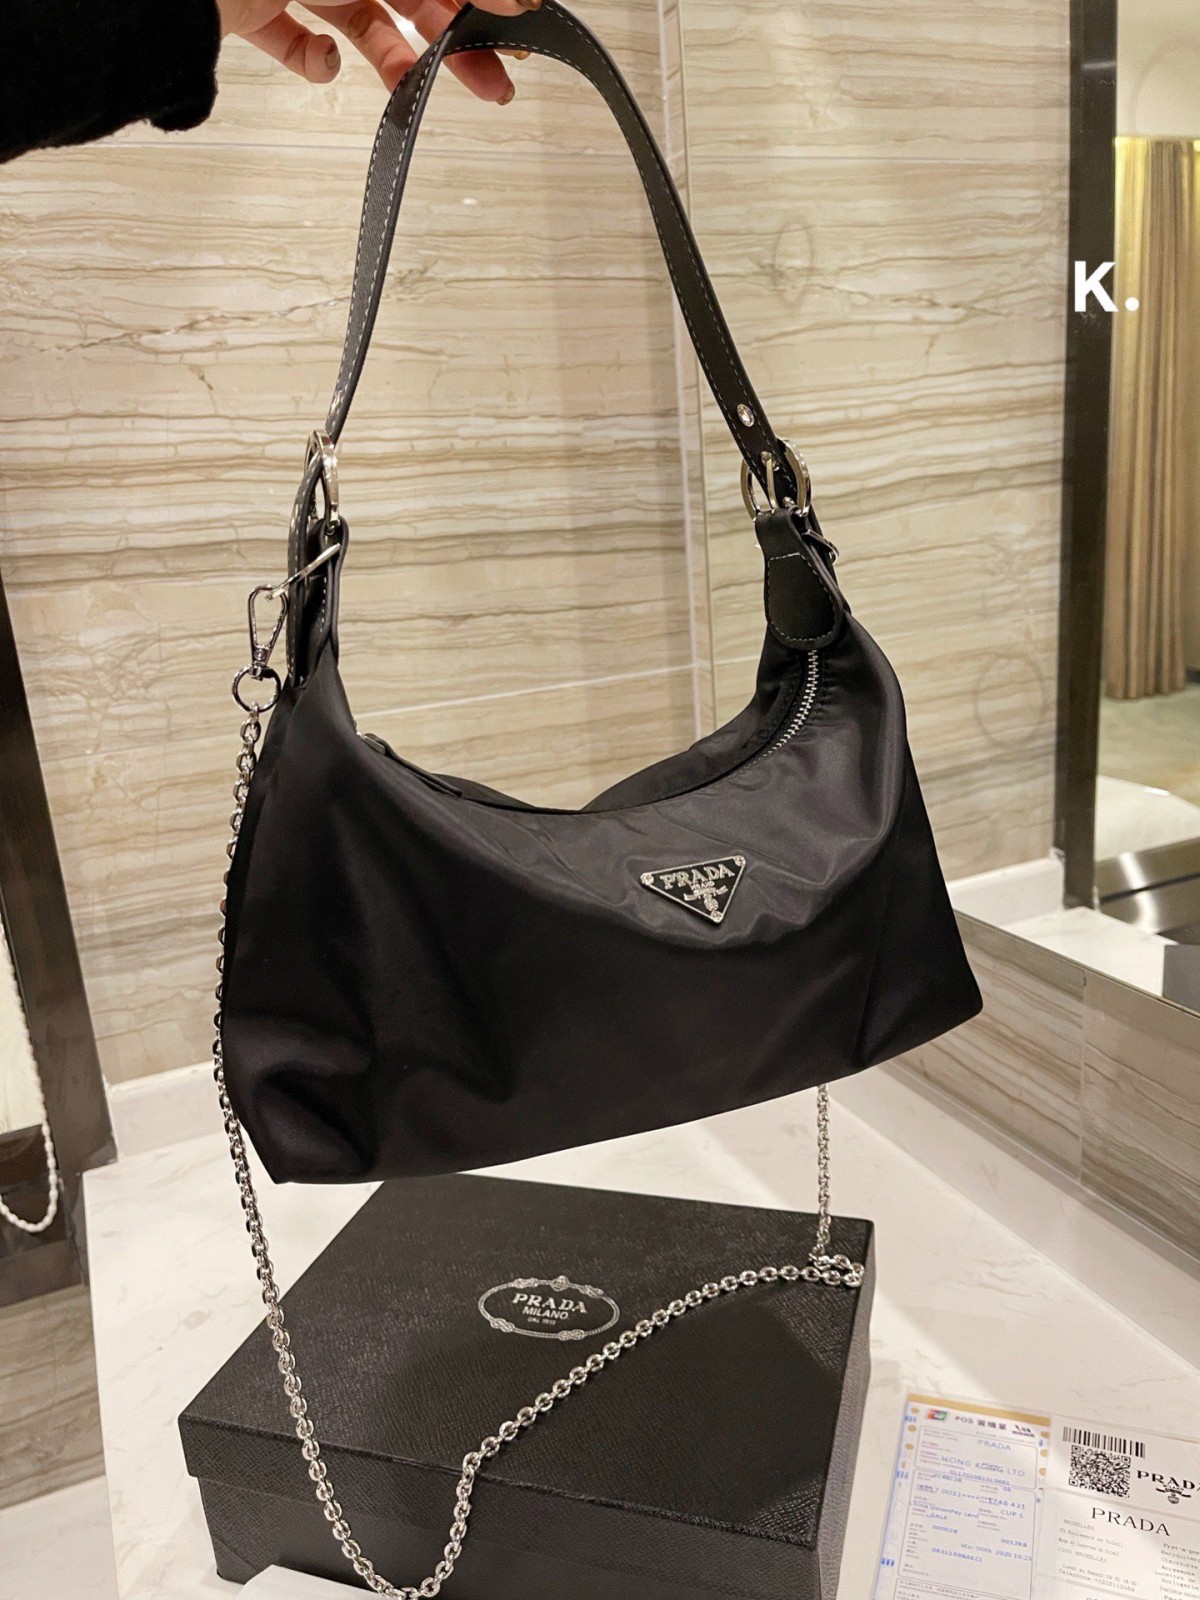 Топ 7 ръководство за най-популярни реплики на чанти на Prada (актуализация за 2022 г.) - Онлайн магазин за фалшива чанта Louis Vuitton с най-добро качество, дизайнерска чанта с копия ru